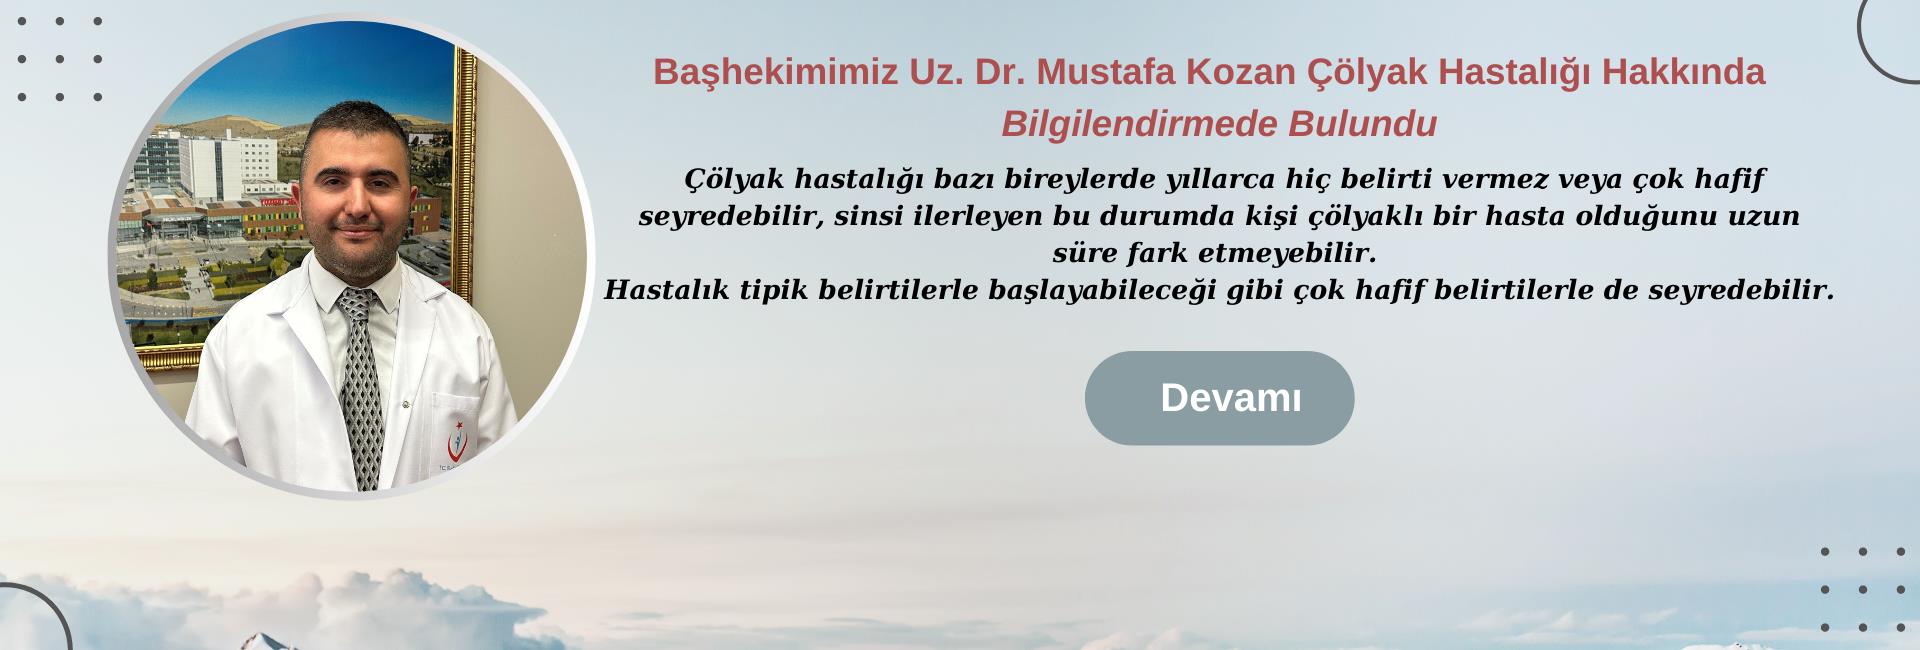 Başhekimimiz Uz. Dr. Mustafa Kozan Çölyak Hastalığı Hakkında Bilgilendirmede Bulundu